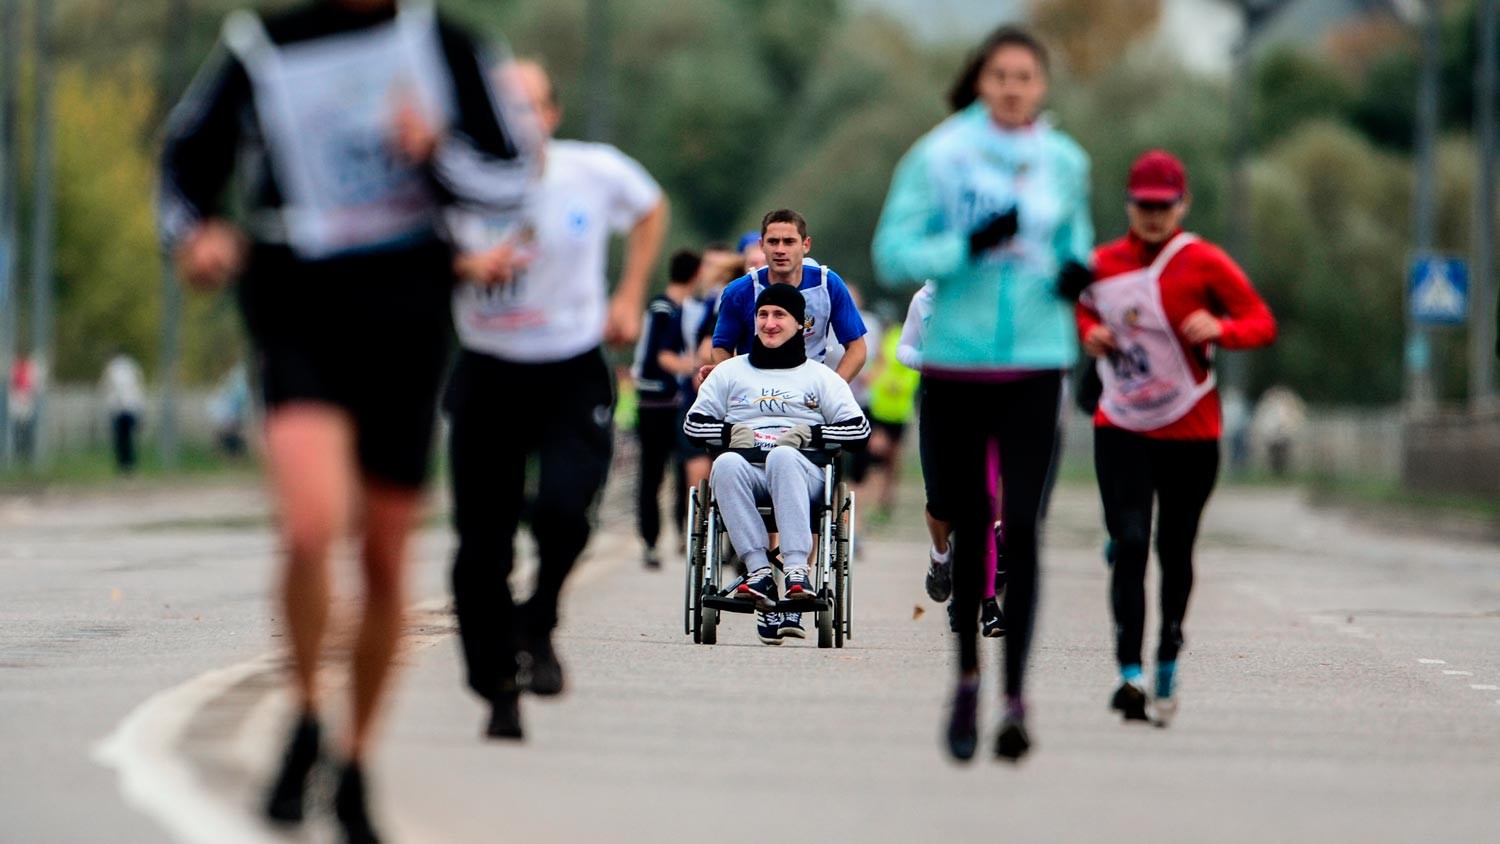 Активная жизнь инвалидов. Спорт для инвалидов. Инвалид и здоровый человек. Люди с ограниченными возможностями. Дети инвалиды в спорте.